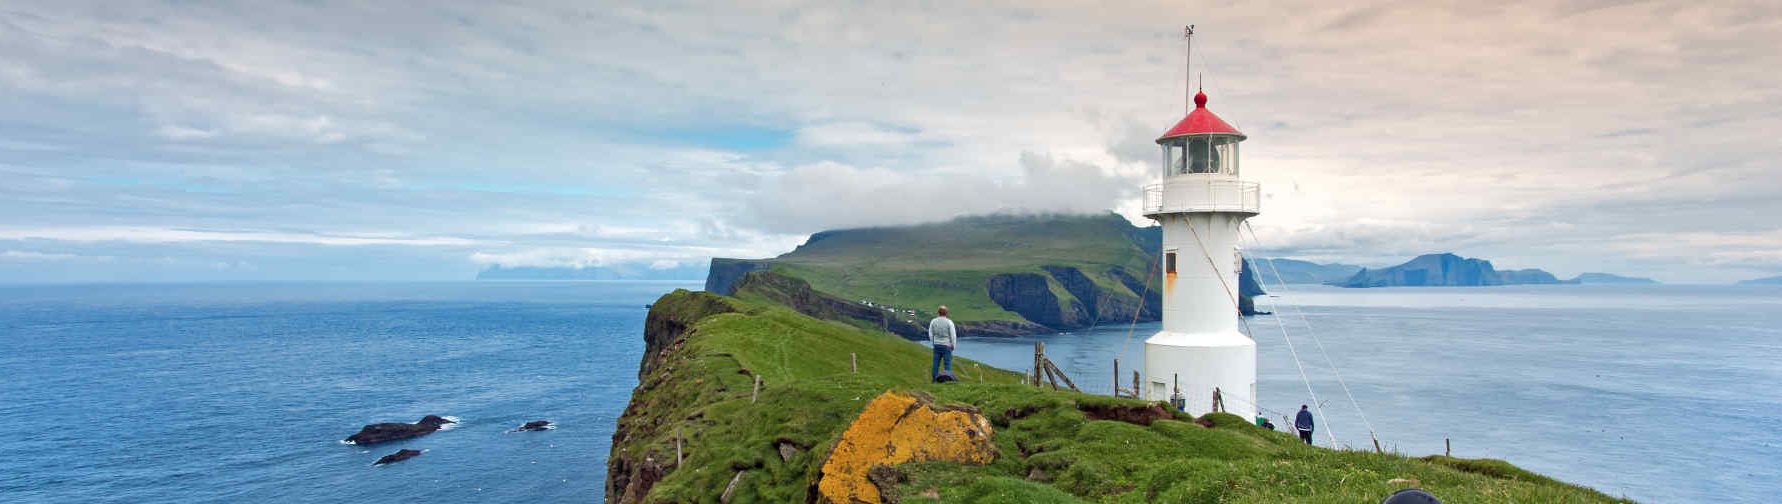 Ini Dia Destinasi Wisata Alam Favorit di Kepulauan Faroe